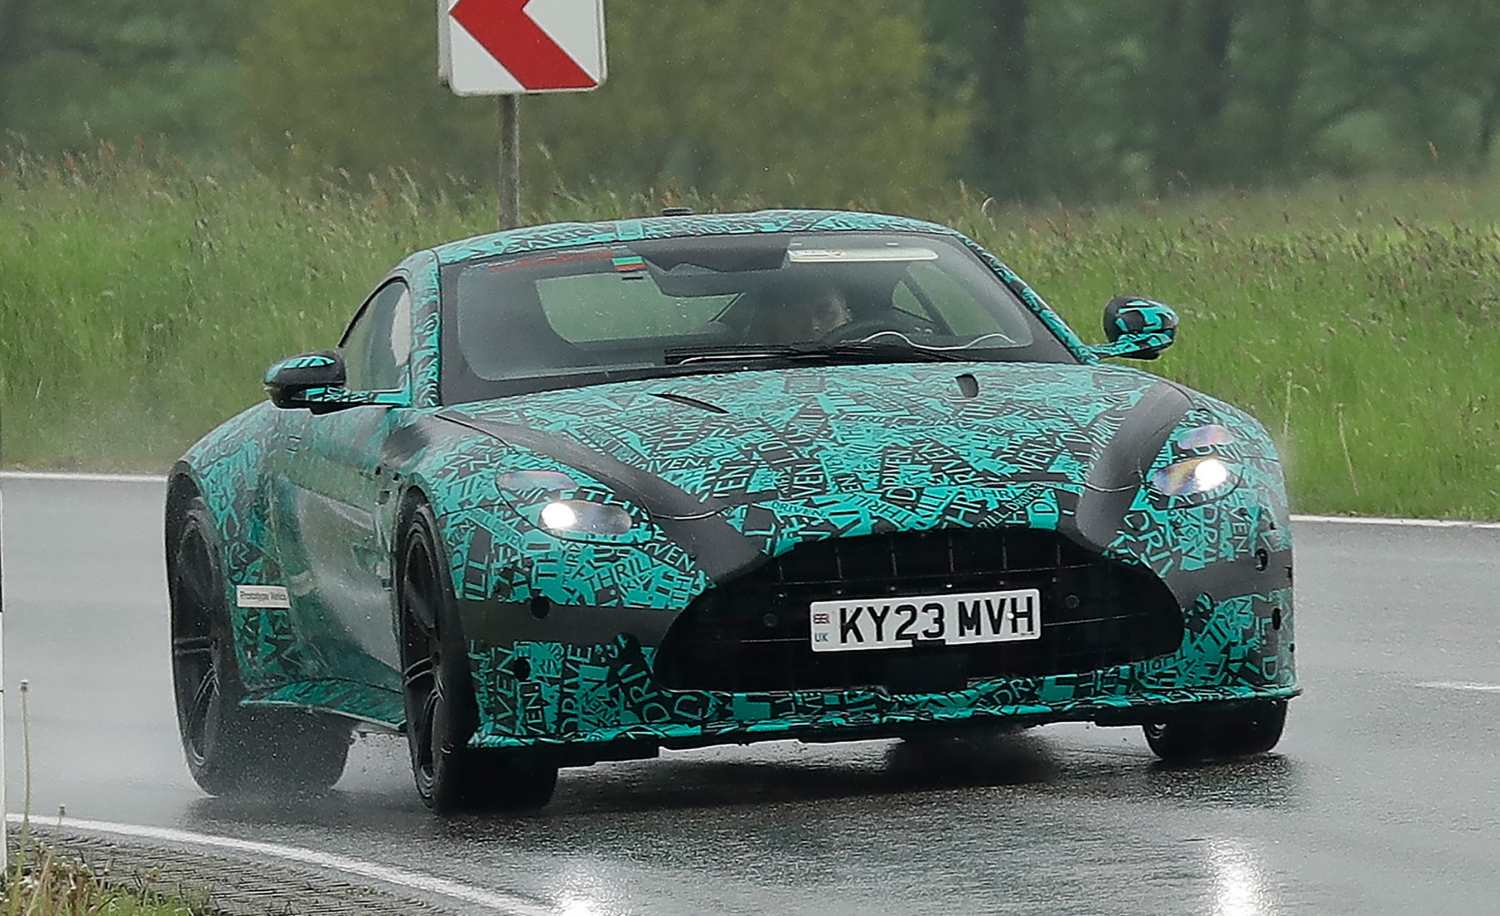 aria-label="Aston Martin Vantage spy photos 1"